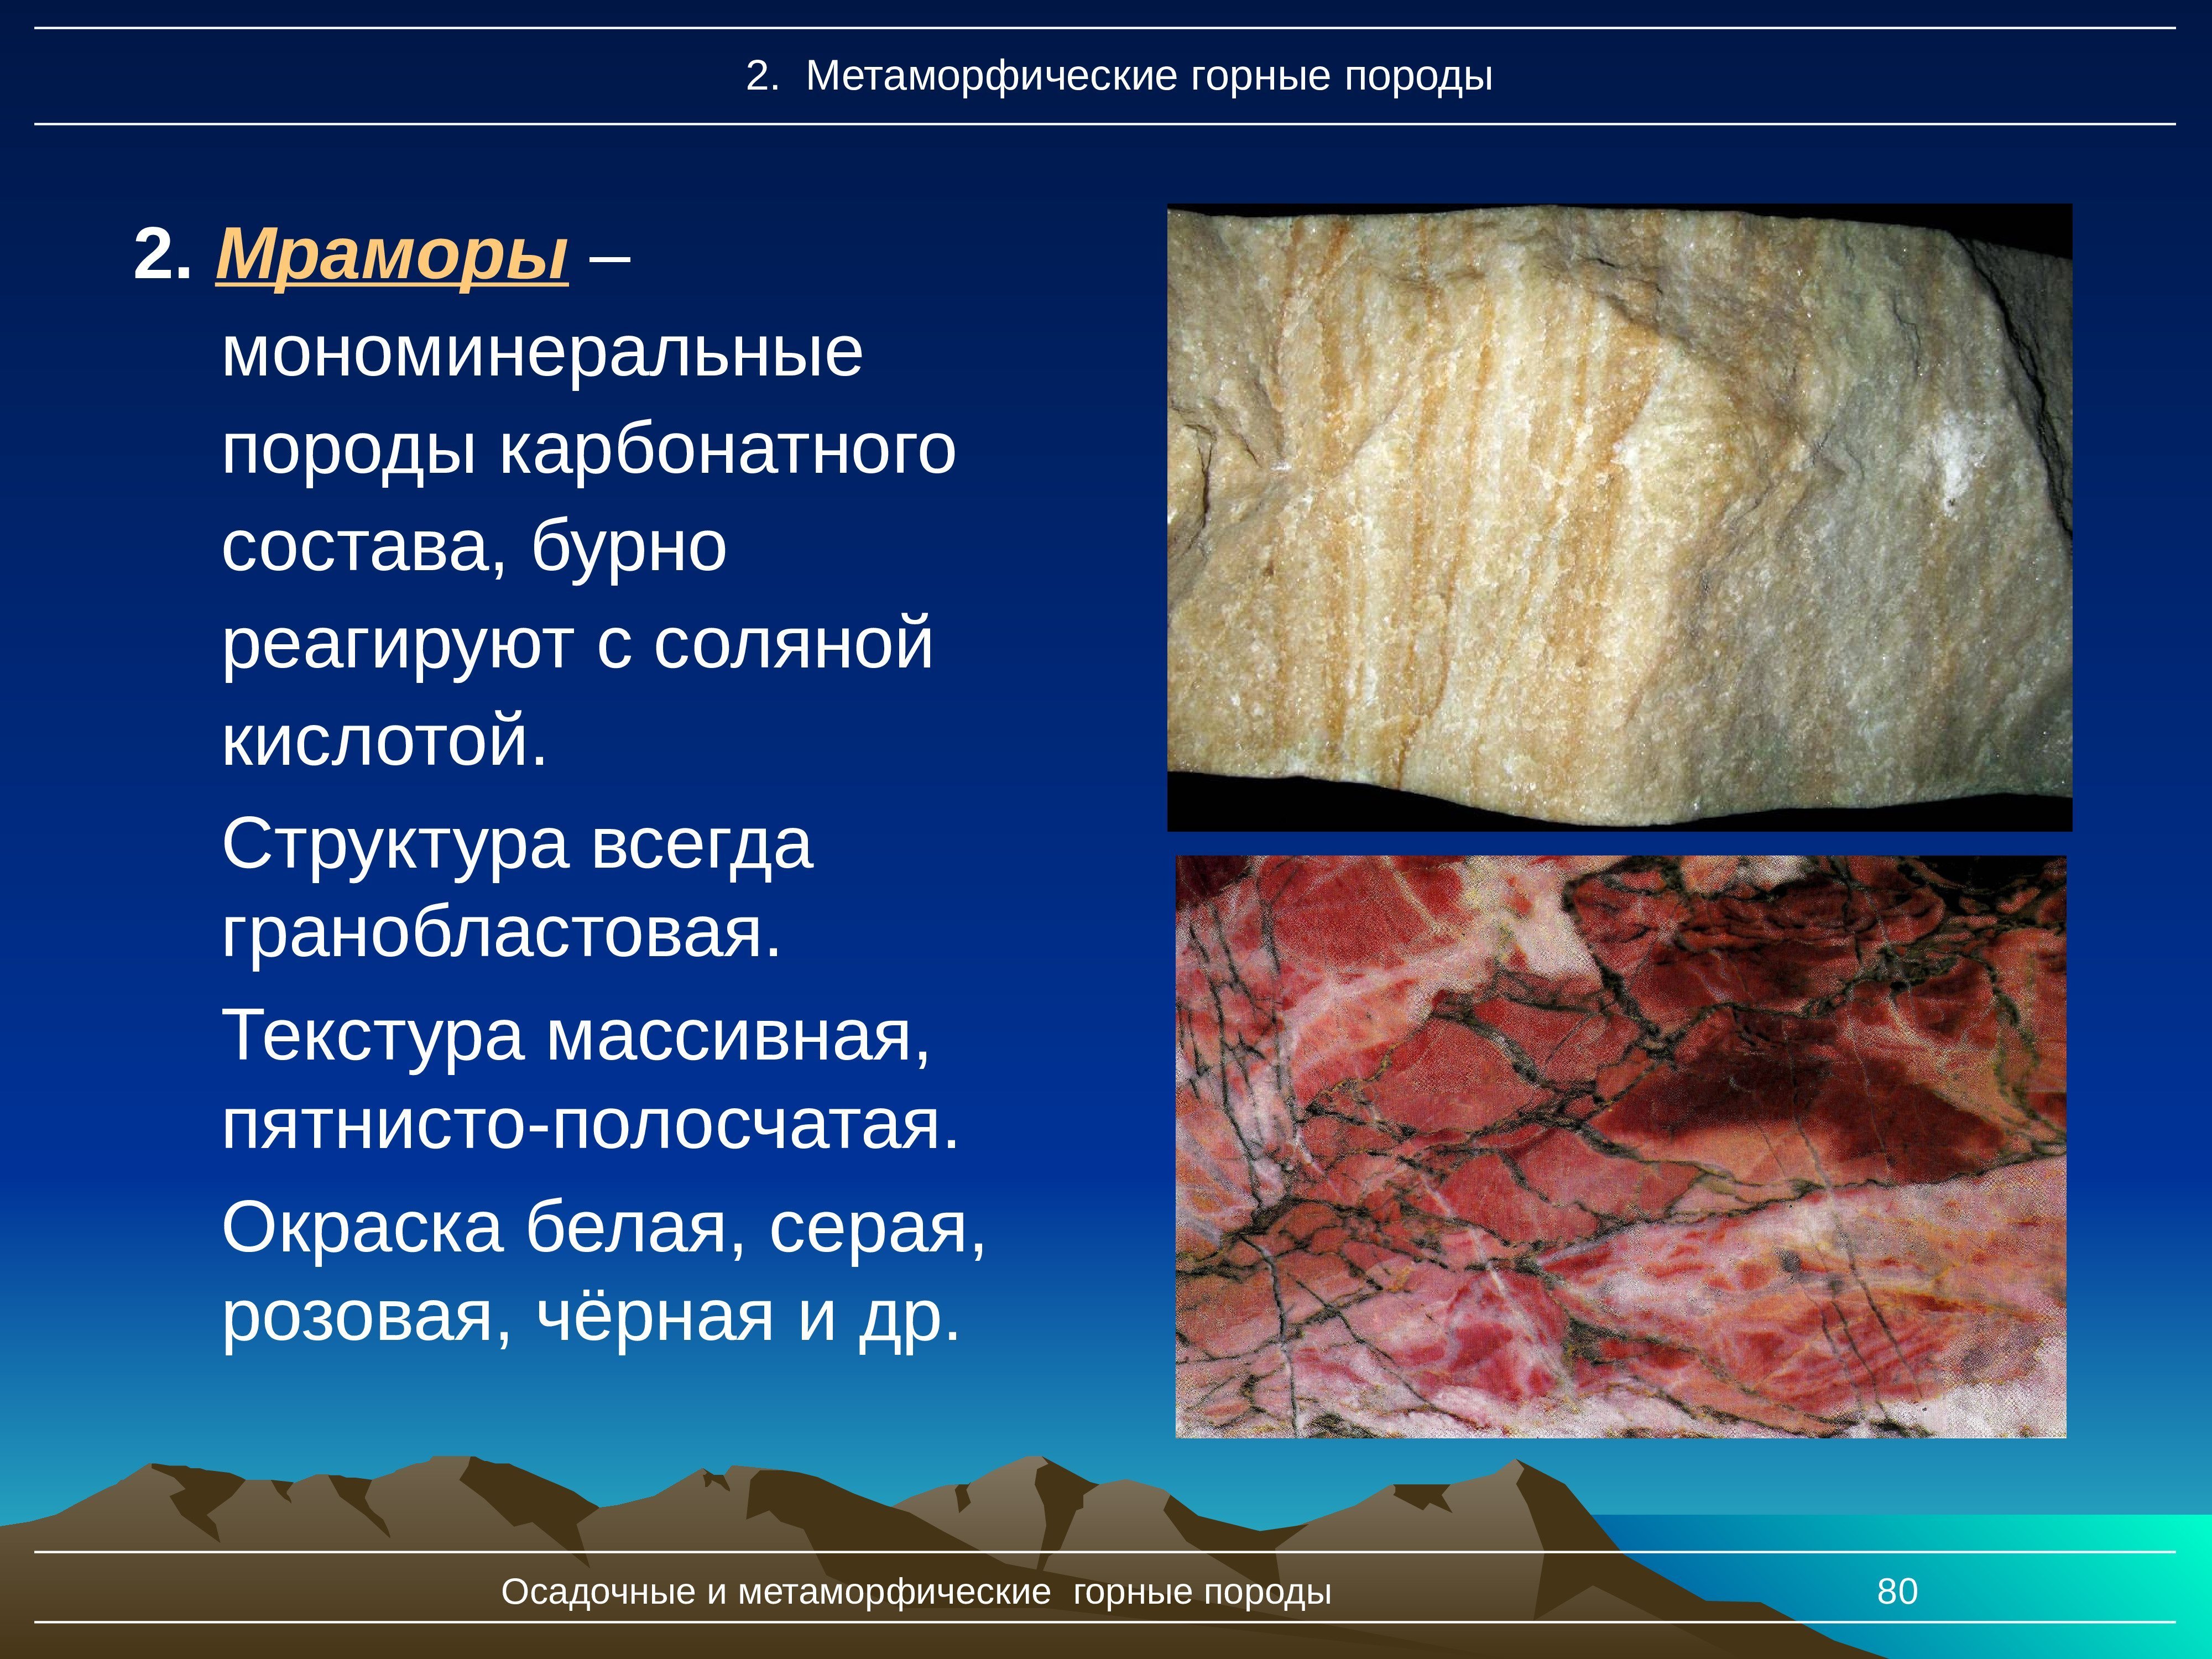 Какие метаморфические породы образуются из. Мрамор метаморфическая Горная порода. Мономинеральные метаморфические горные породы. Осадочные горные породы мрамор. Структура мрамора.